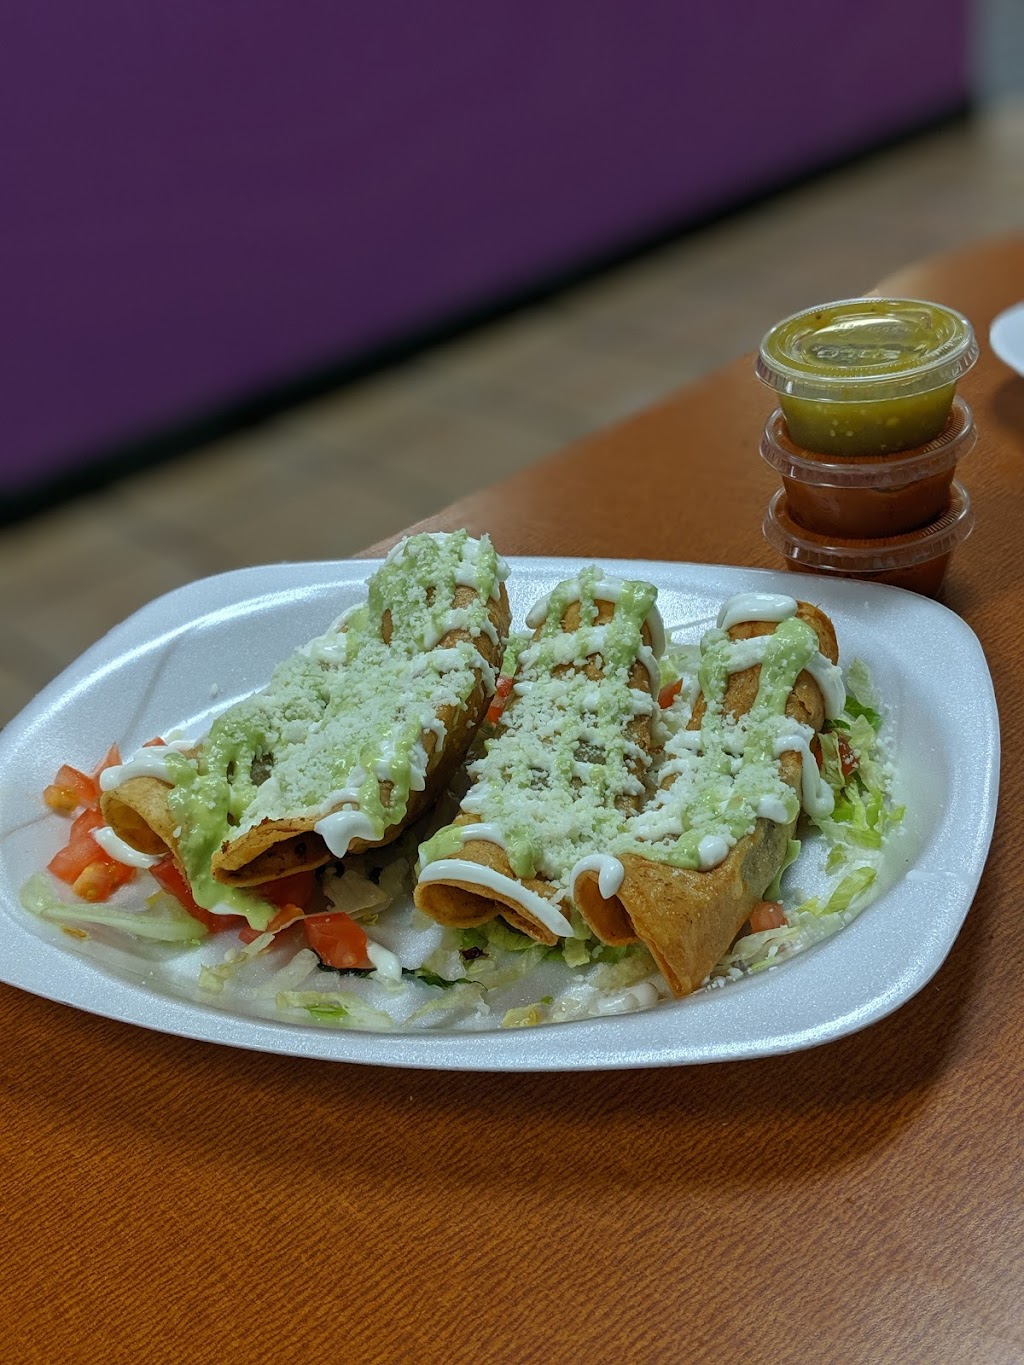 Tacos La Paloma | 530 W Main St #6, Anoka, MN 55303 | Phone: (763) 208-3349